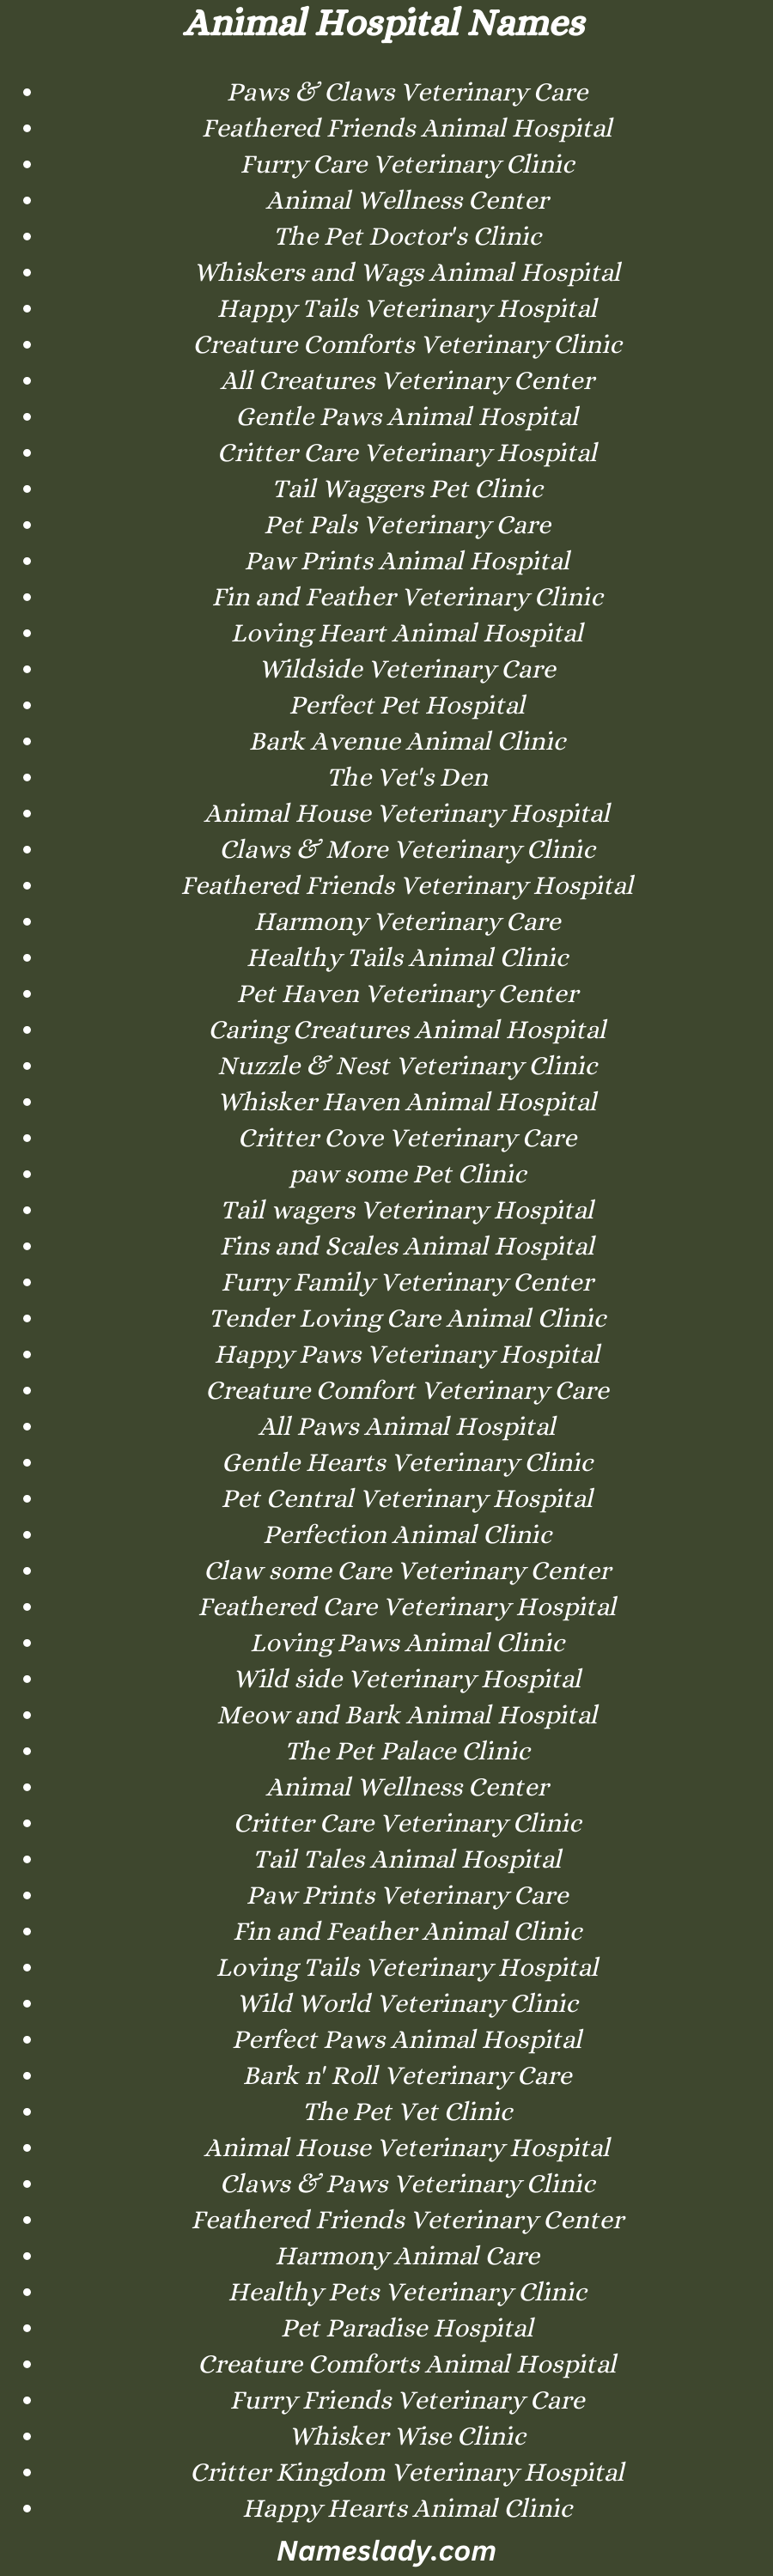 Animal Hospital Names